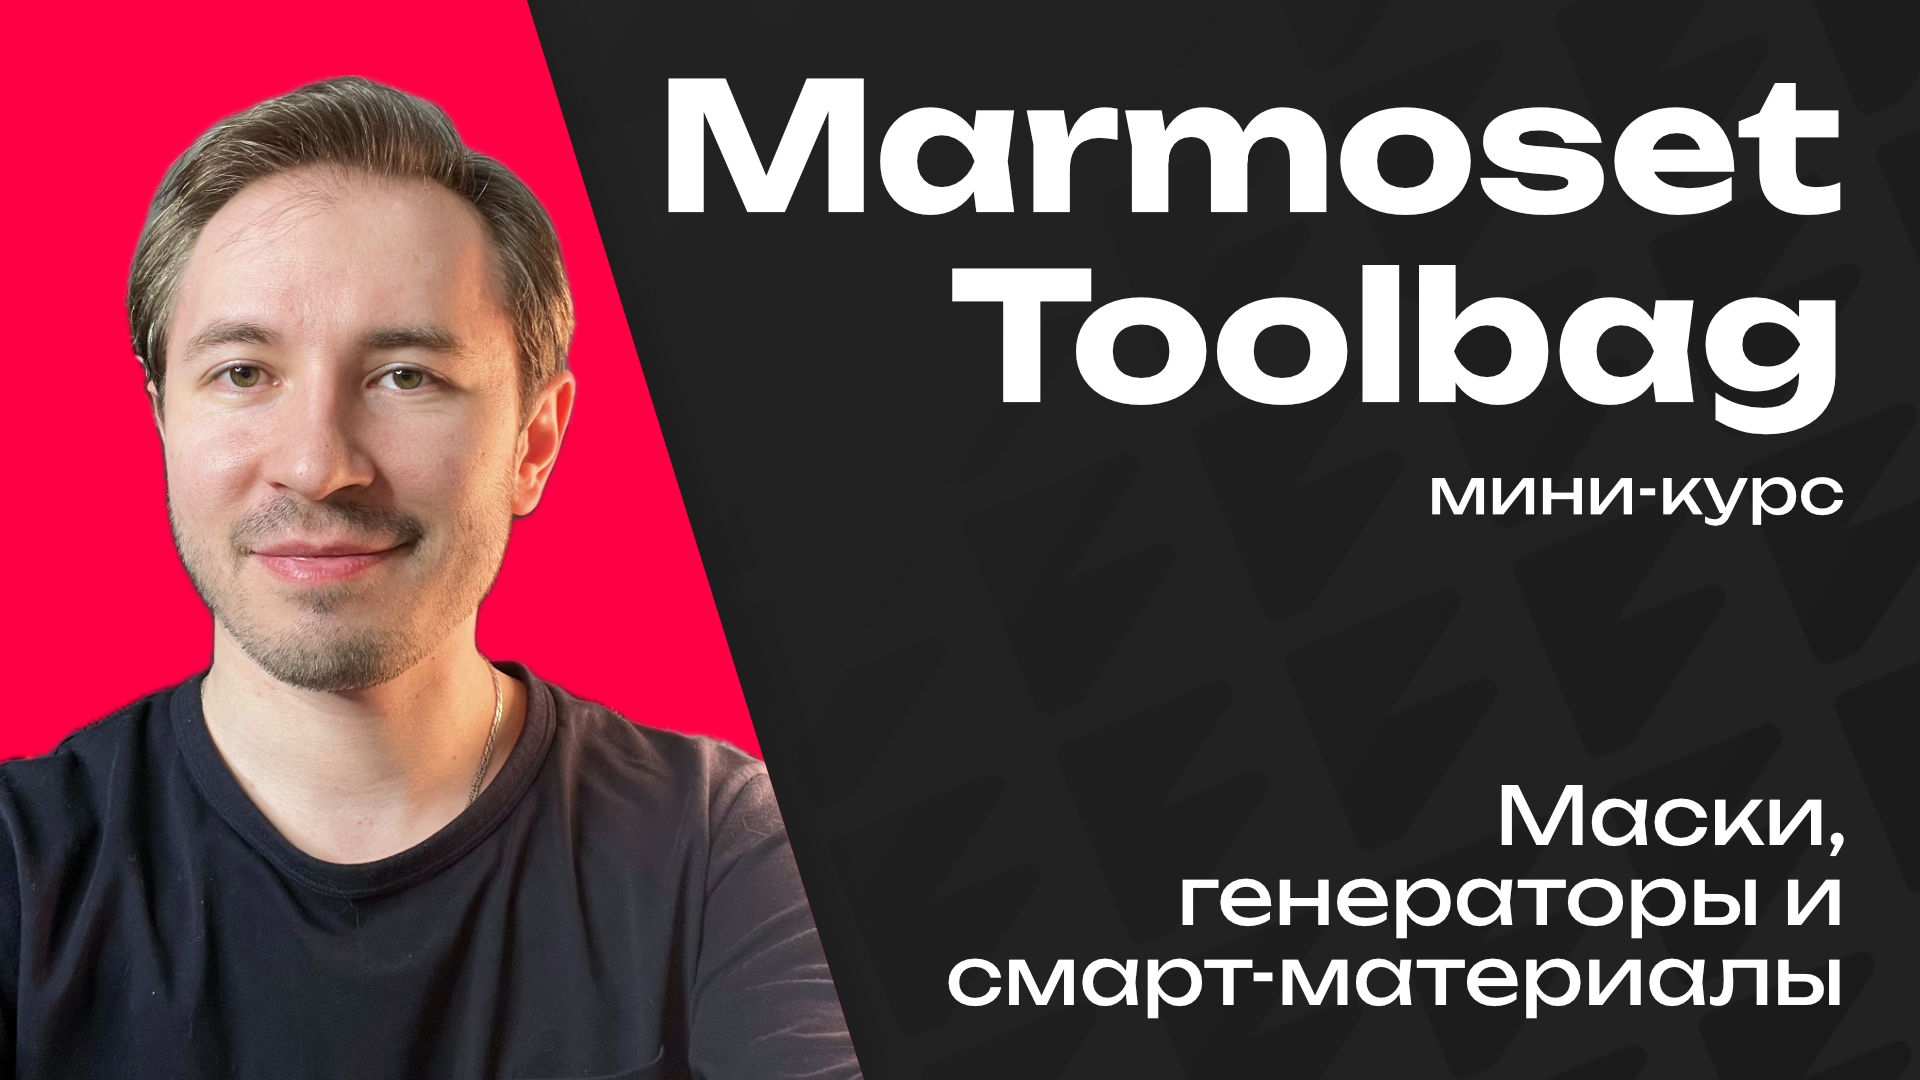 Маски, генераторы и Smart-материалы в Marmoset Toolbag